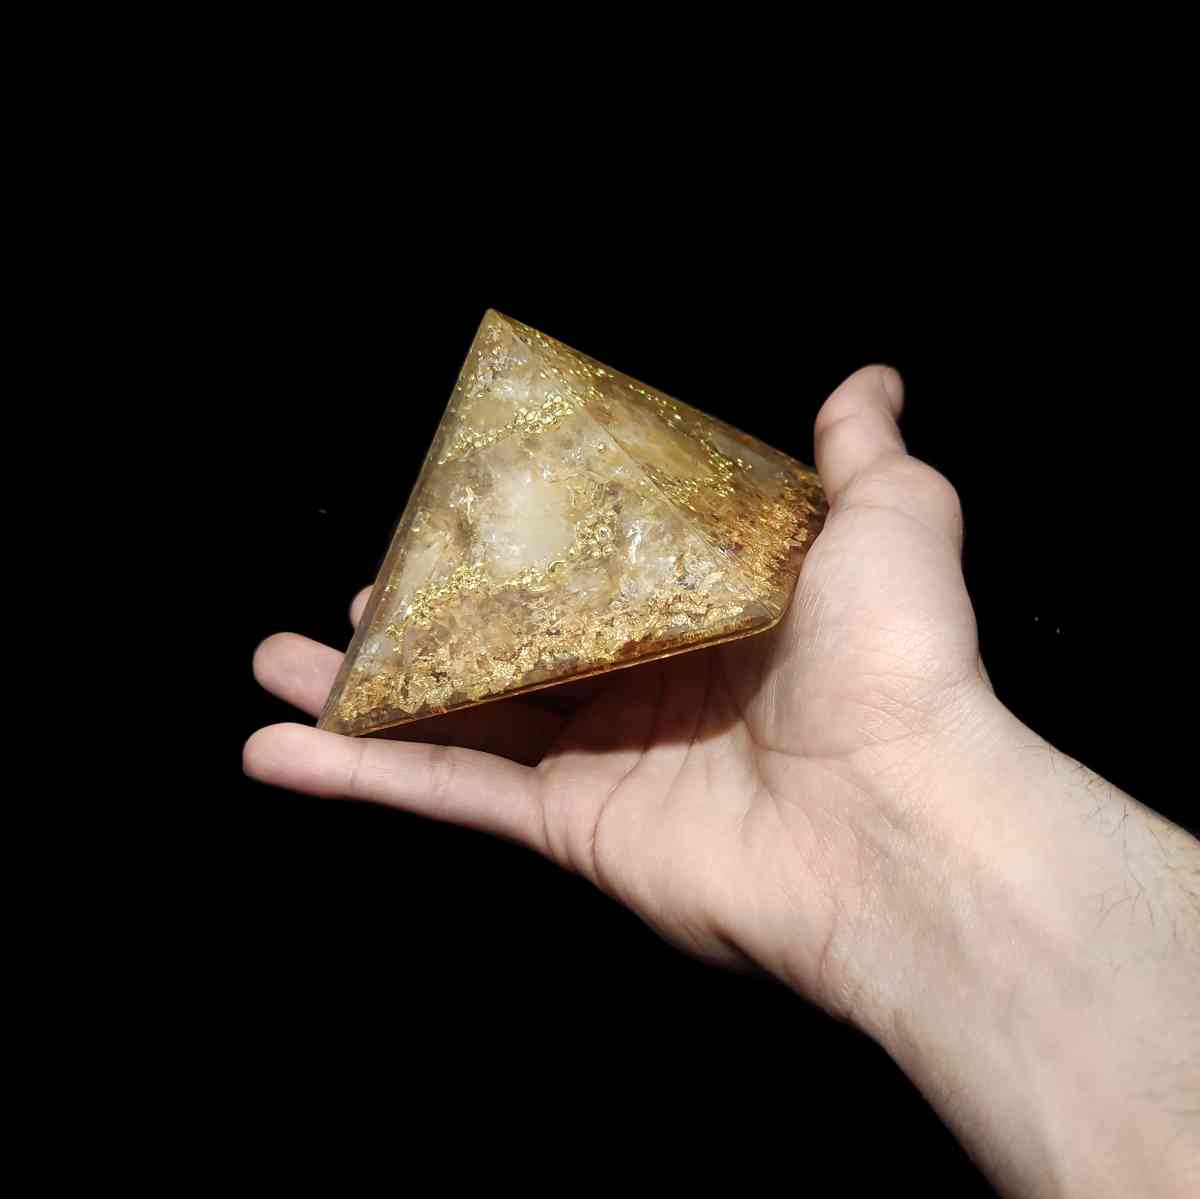 Champagnerfarbene Edelstein Orgonit Pyramide, welche von einer Hand gehalten wird.